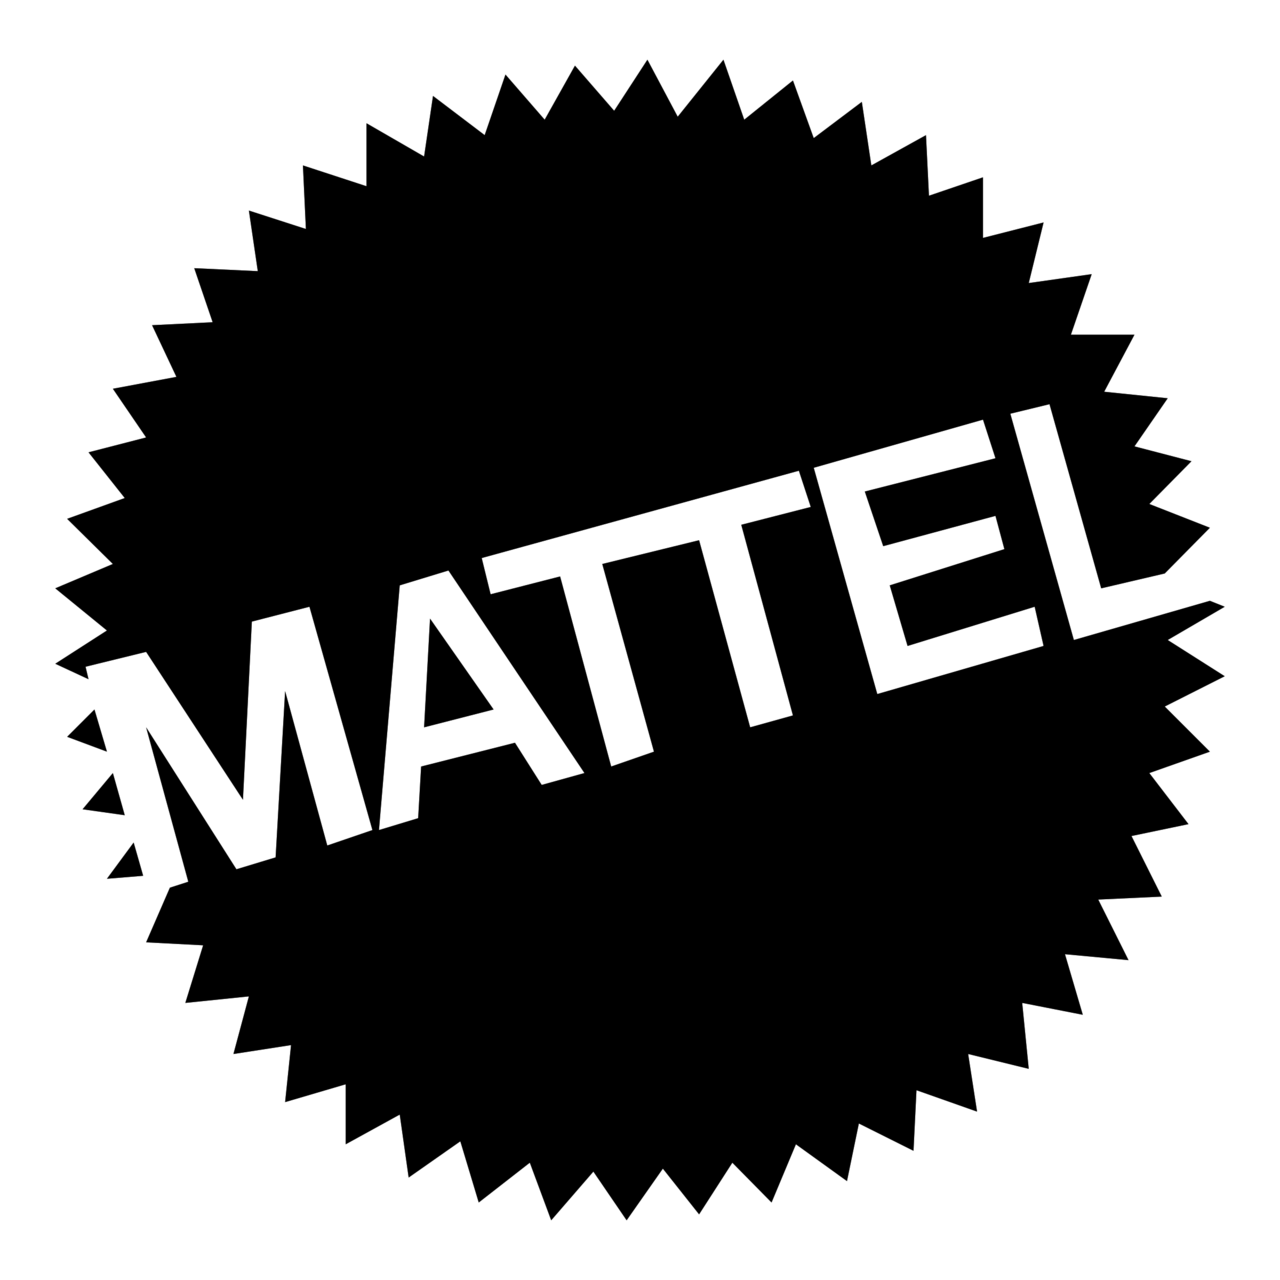 mattel-logo-black-and-white.png